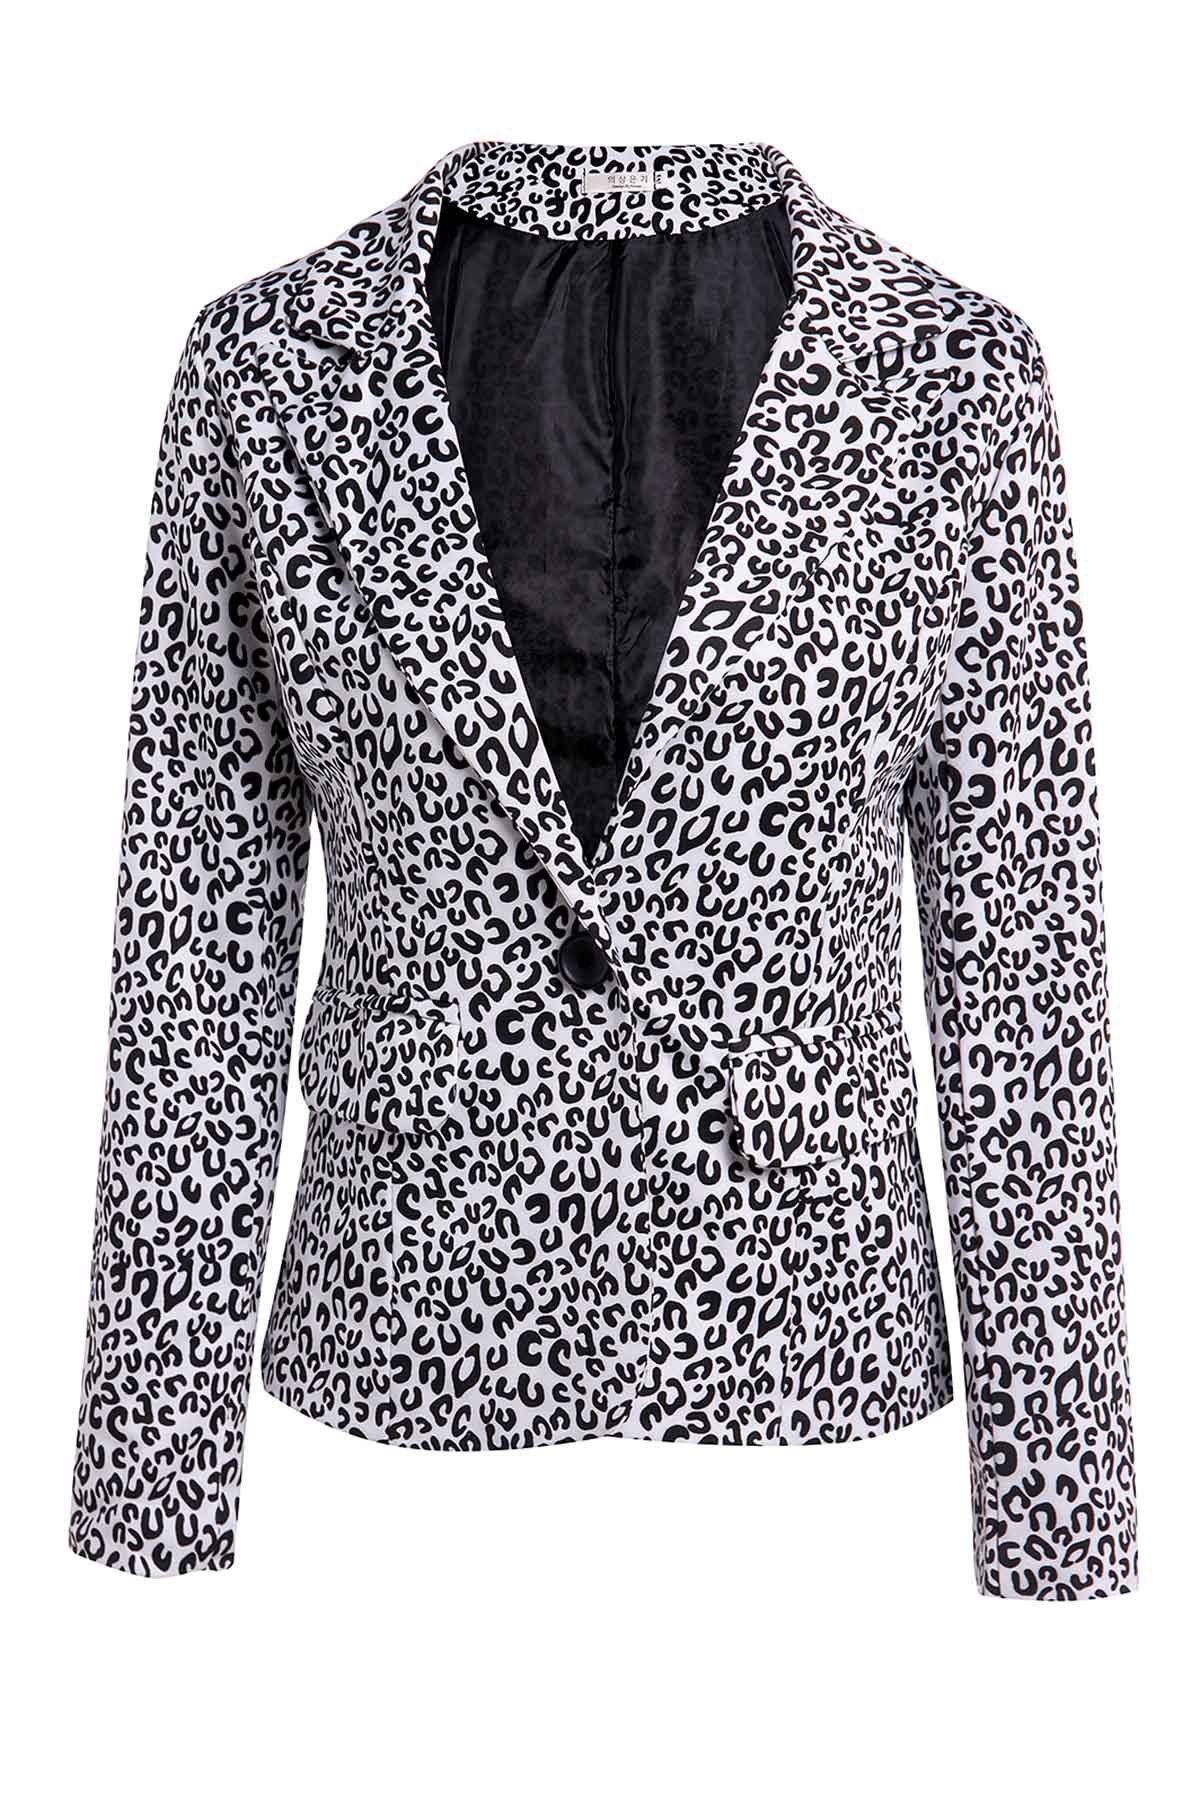 [70% OFF] Elegant Lapel Neck Long Sleeve Leopard Print Jacket Blazer ...